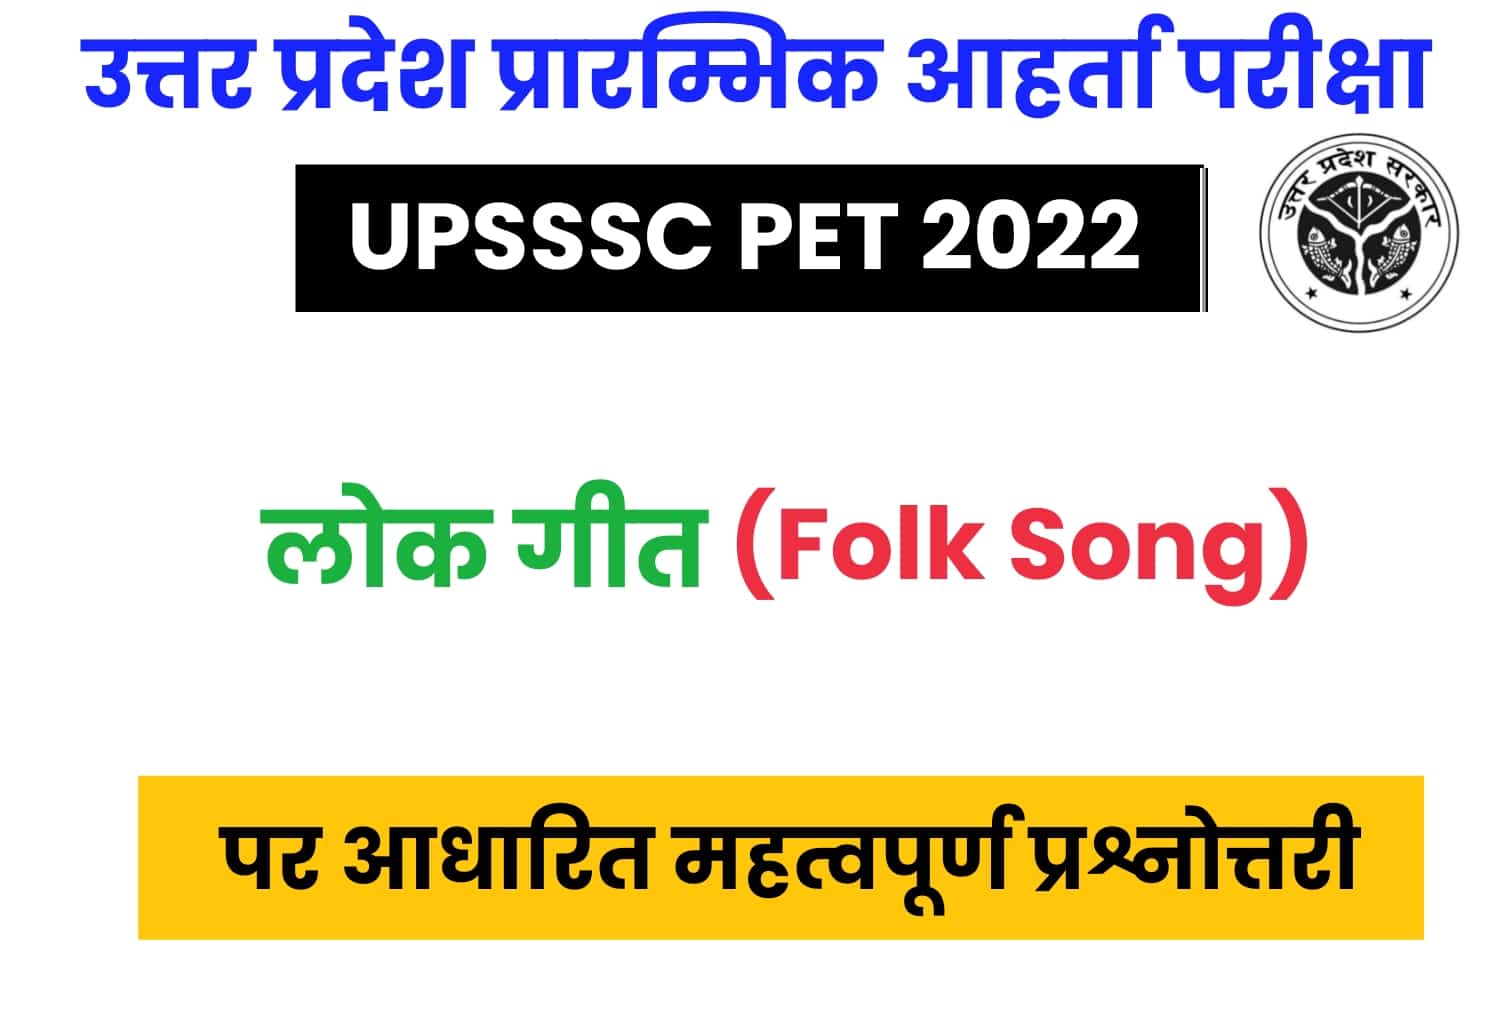 UPSSSC PET Exam 2022 : भारत के ‘लोकगीत’ से जुड़े ऐसे ही सवाल पूछे जाएंगे UP PET में, डालें एक नजर